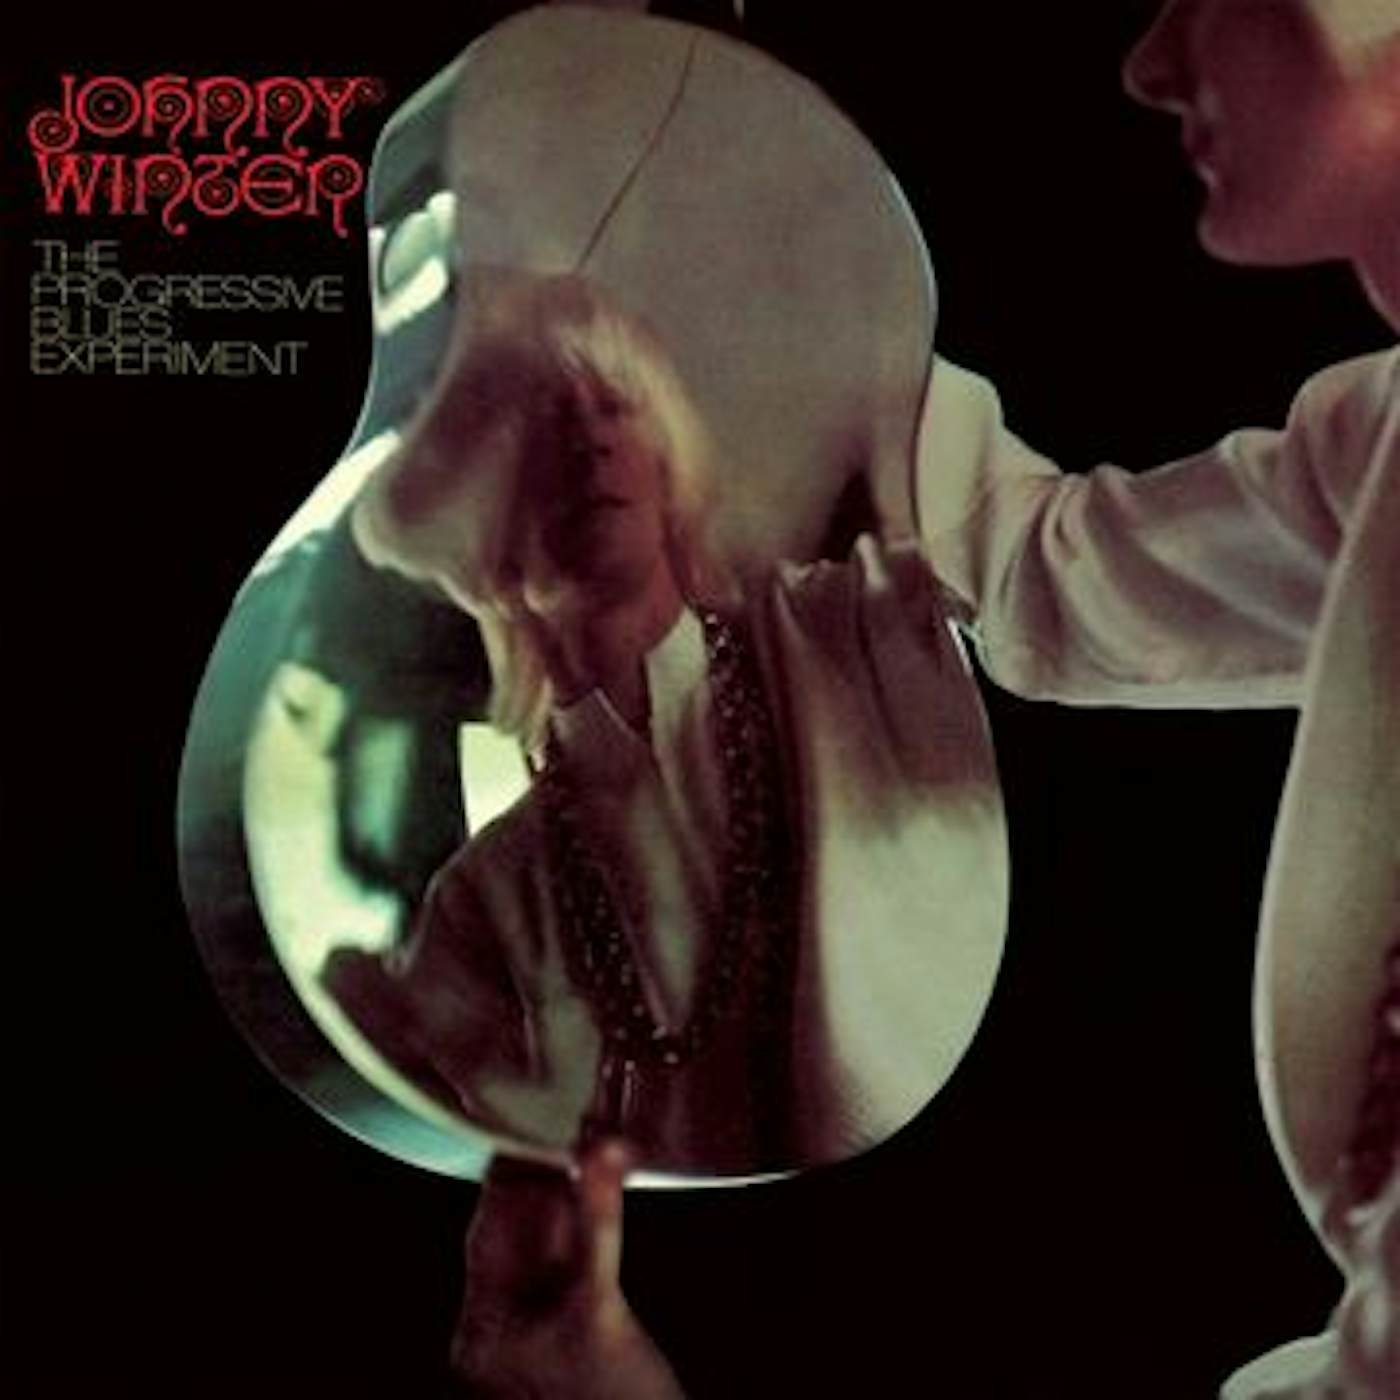 Johnny Winter Progressive Blues Experiment Vinyl Record